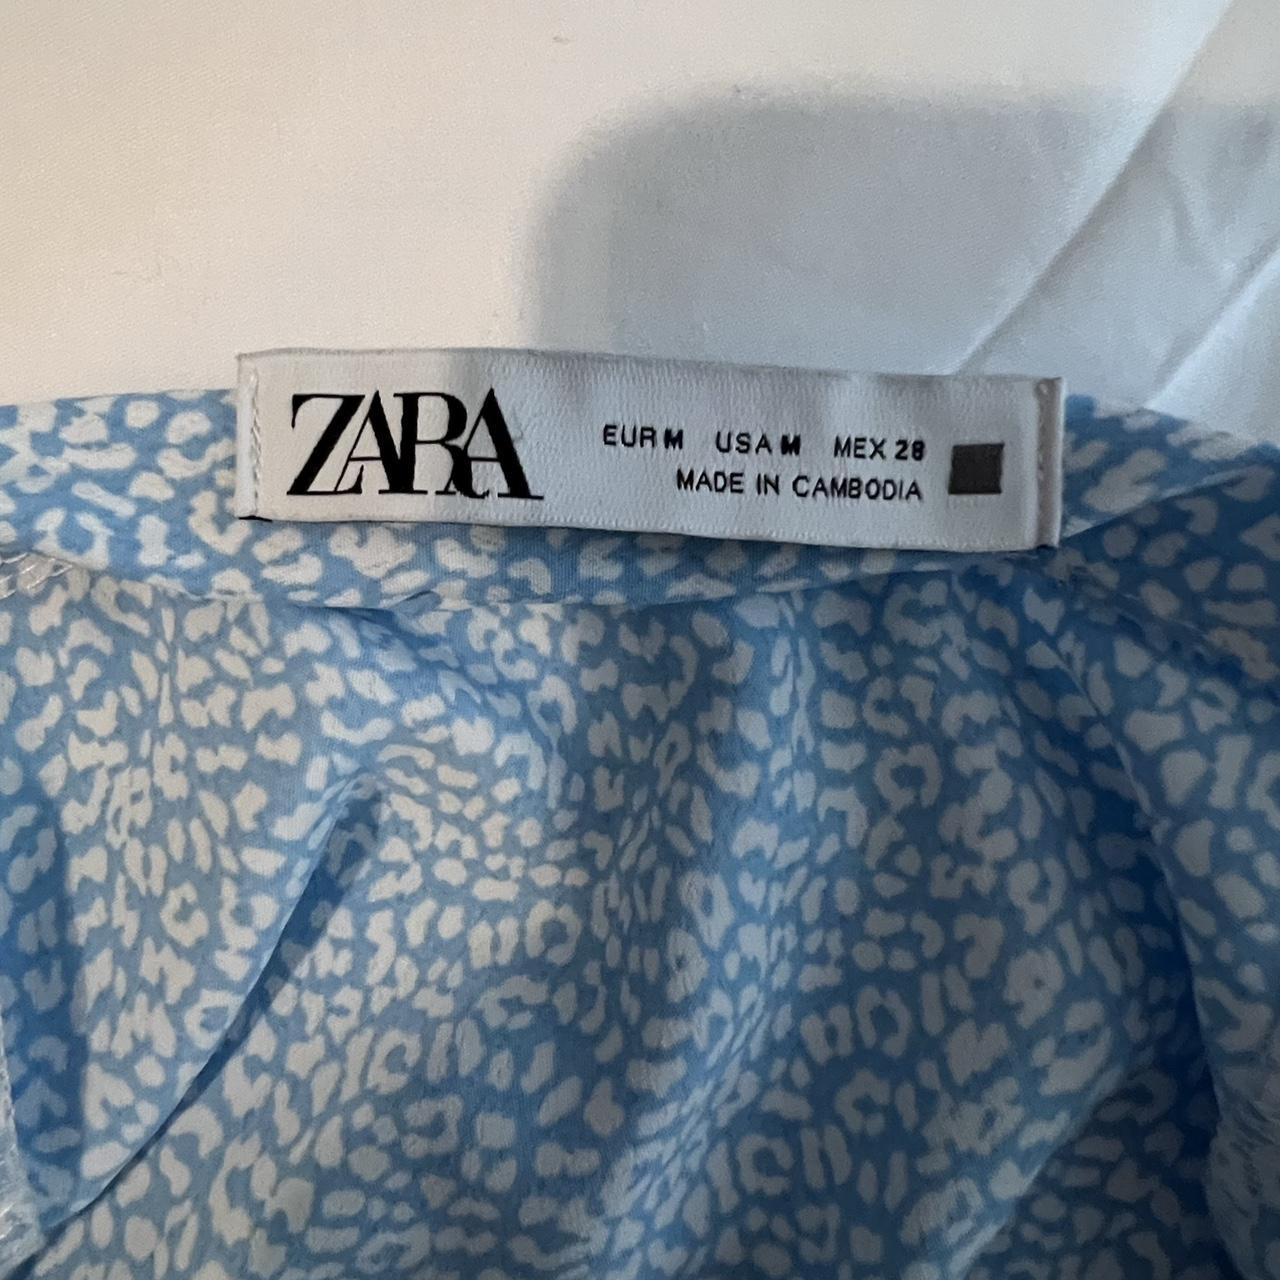 Zara blue and white skort never worn. Size medium - Depop